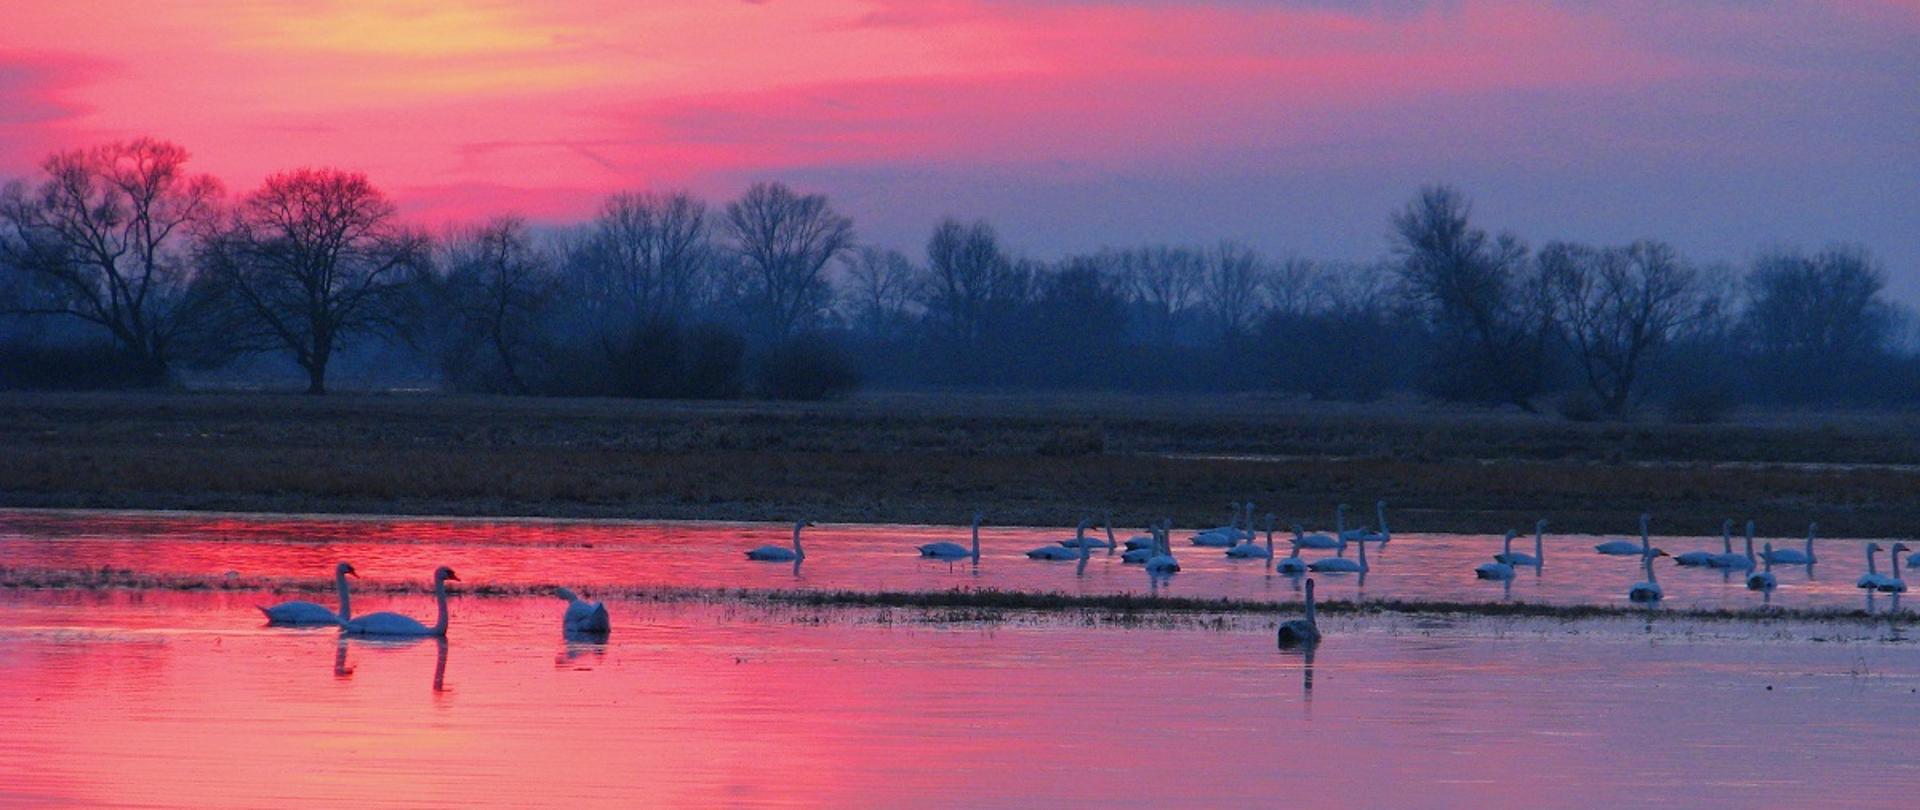 Krajobraz z zachodzącym słońcem w kolorze różowym. W tle drzewa. Po wodzie pływają białe ptaki (łabędzie).